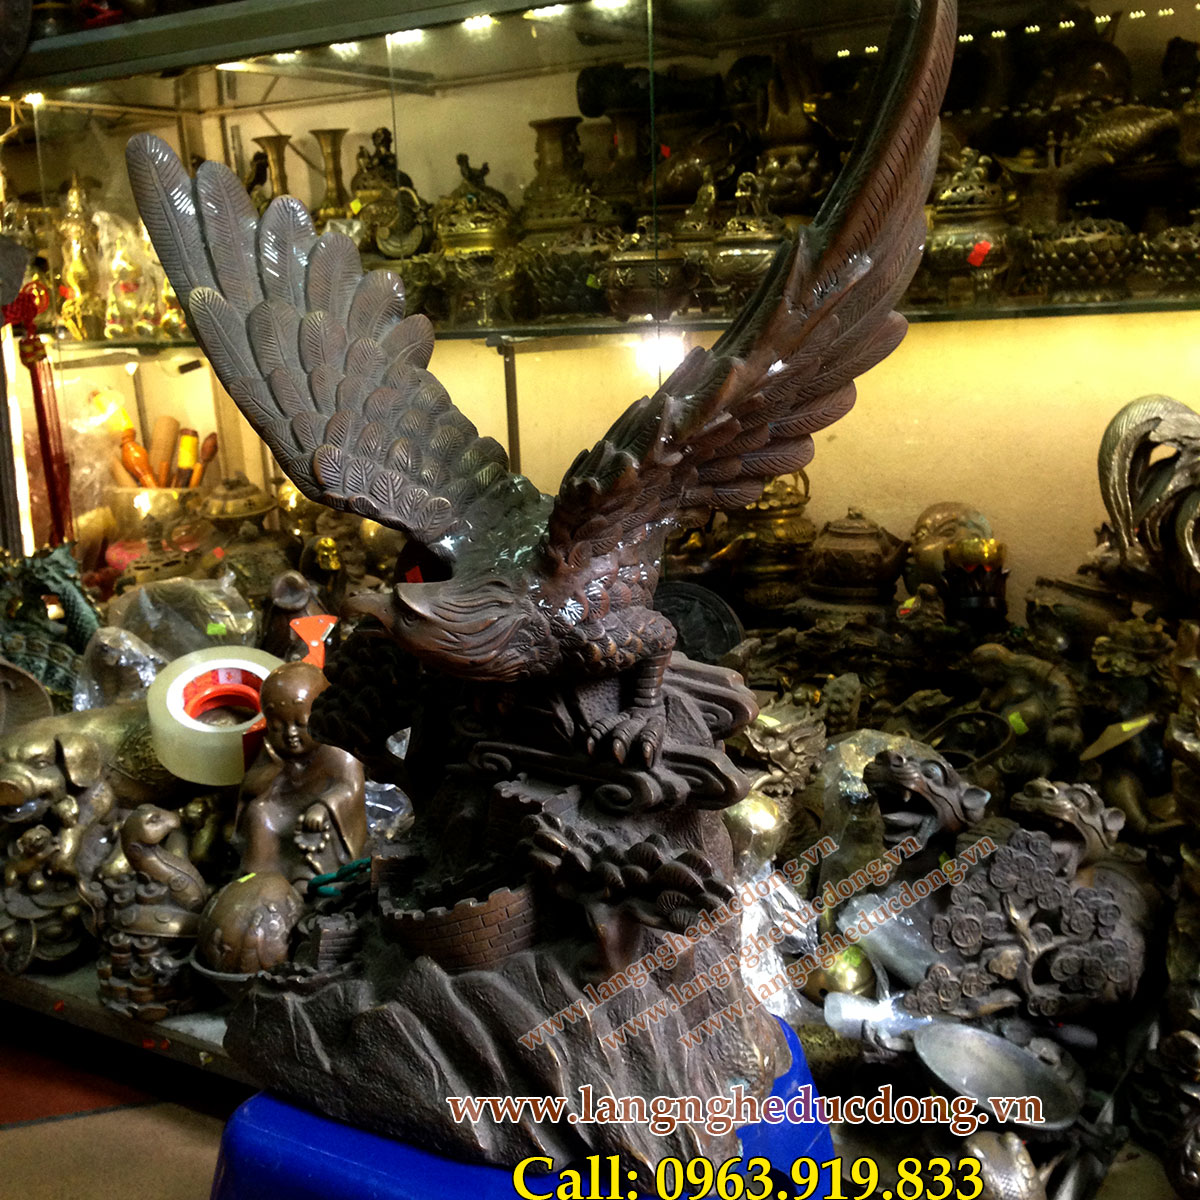 langngheducdong.vn - Tượng đồng nghệ thuật, Tượng Đại Bàng, mẫu tượng đại bàng